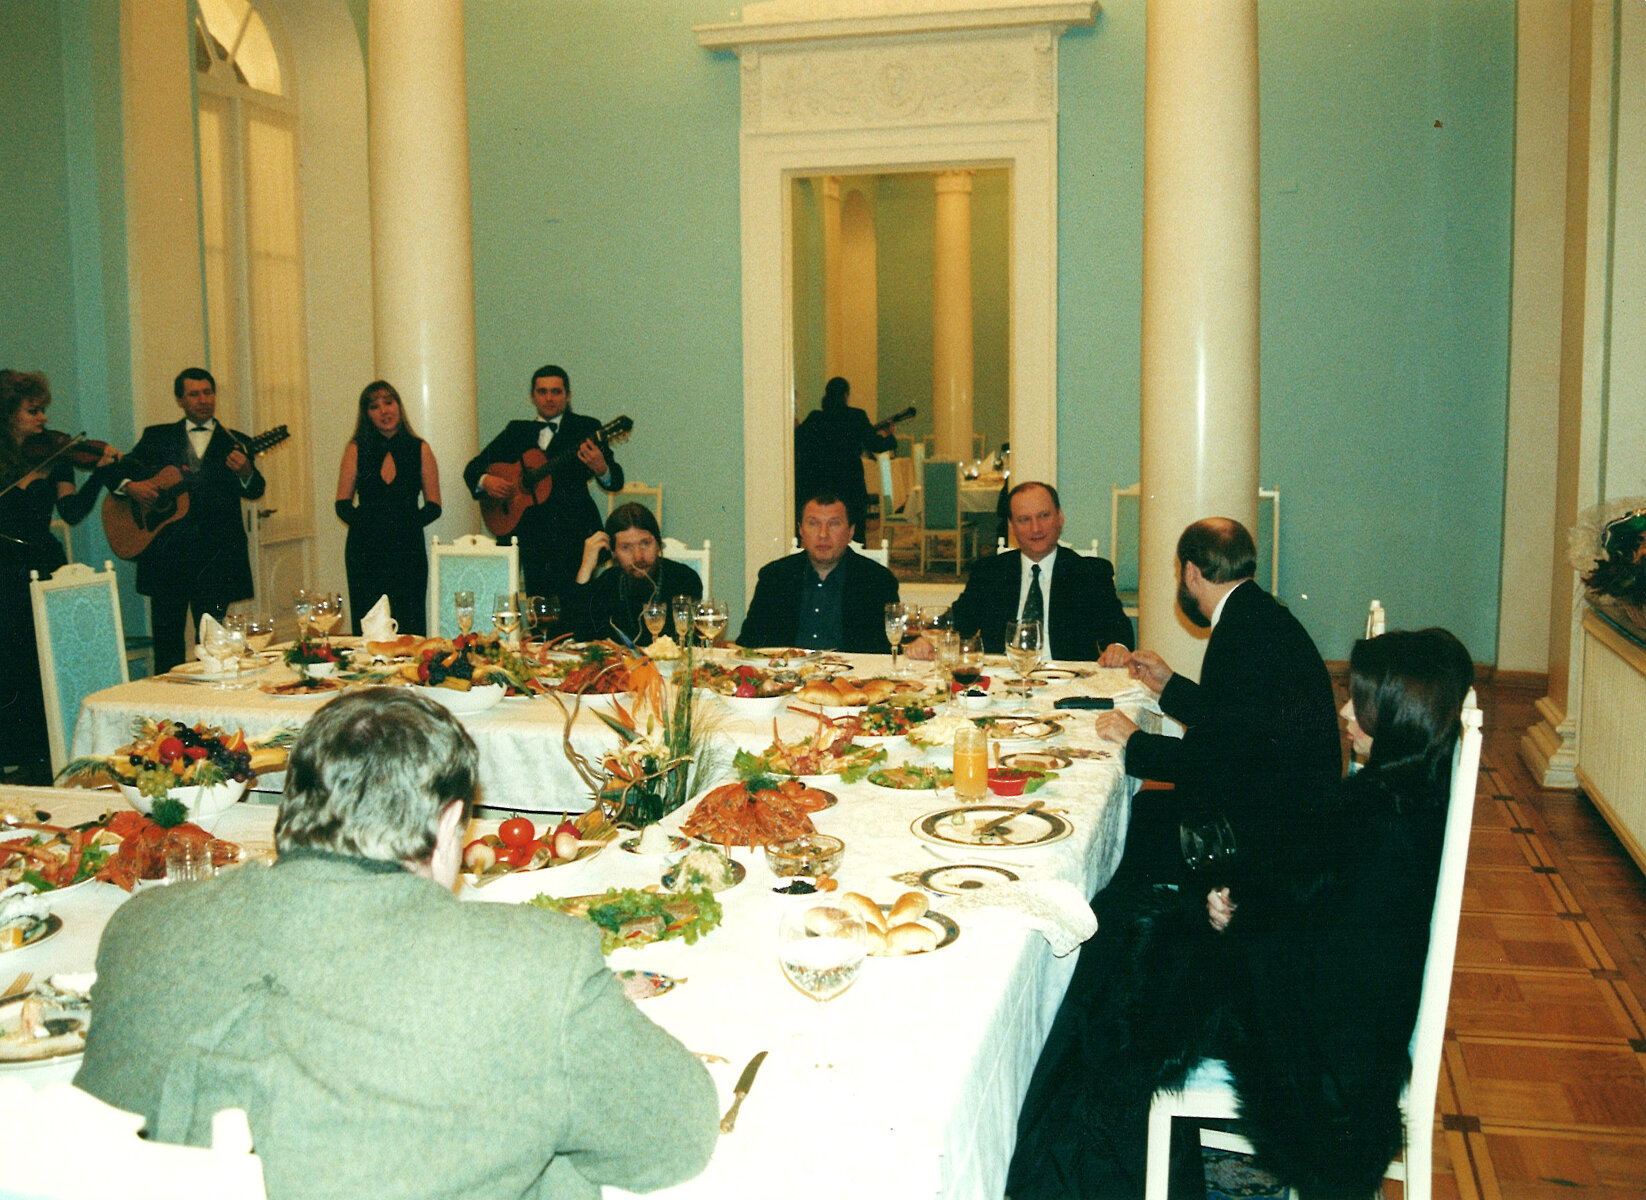 <p>День рождения бывшей жены Галины Пугачевой, 2005 год, на даче Пугачевых в Горках с Тихоном Шевкуновым (крайний слева) и бывшим директором ФСБ Николаем Патрушевым (второй справа)<br />
&nbsp;</p>